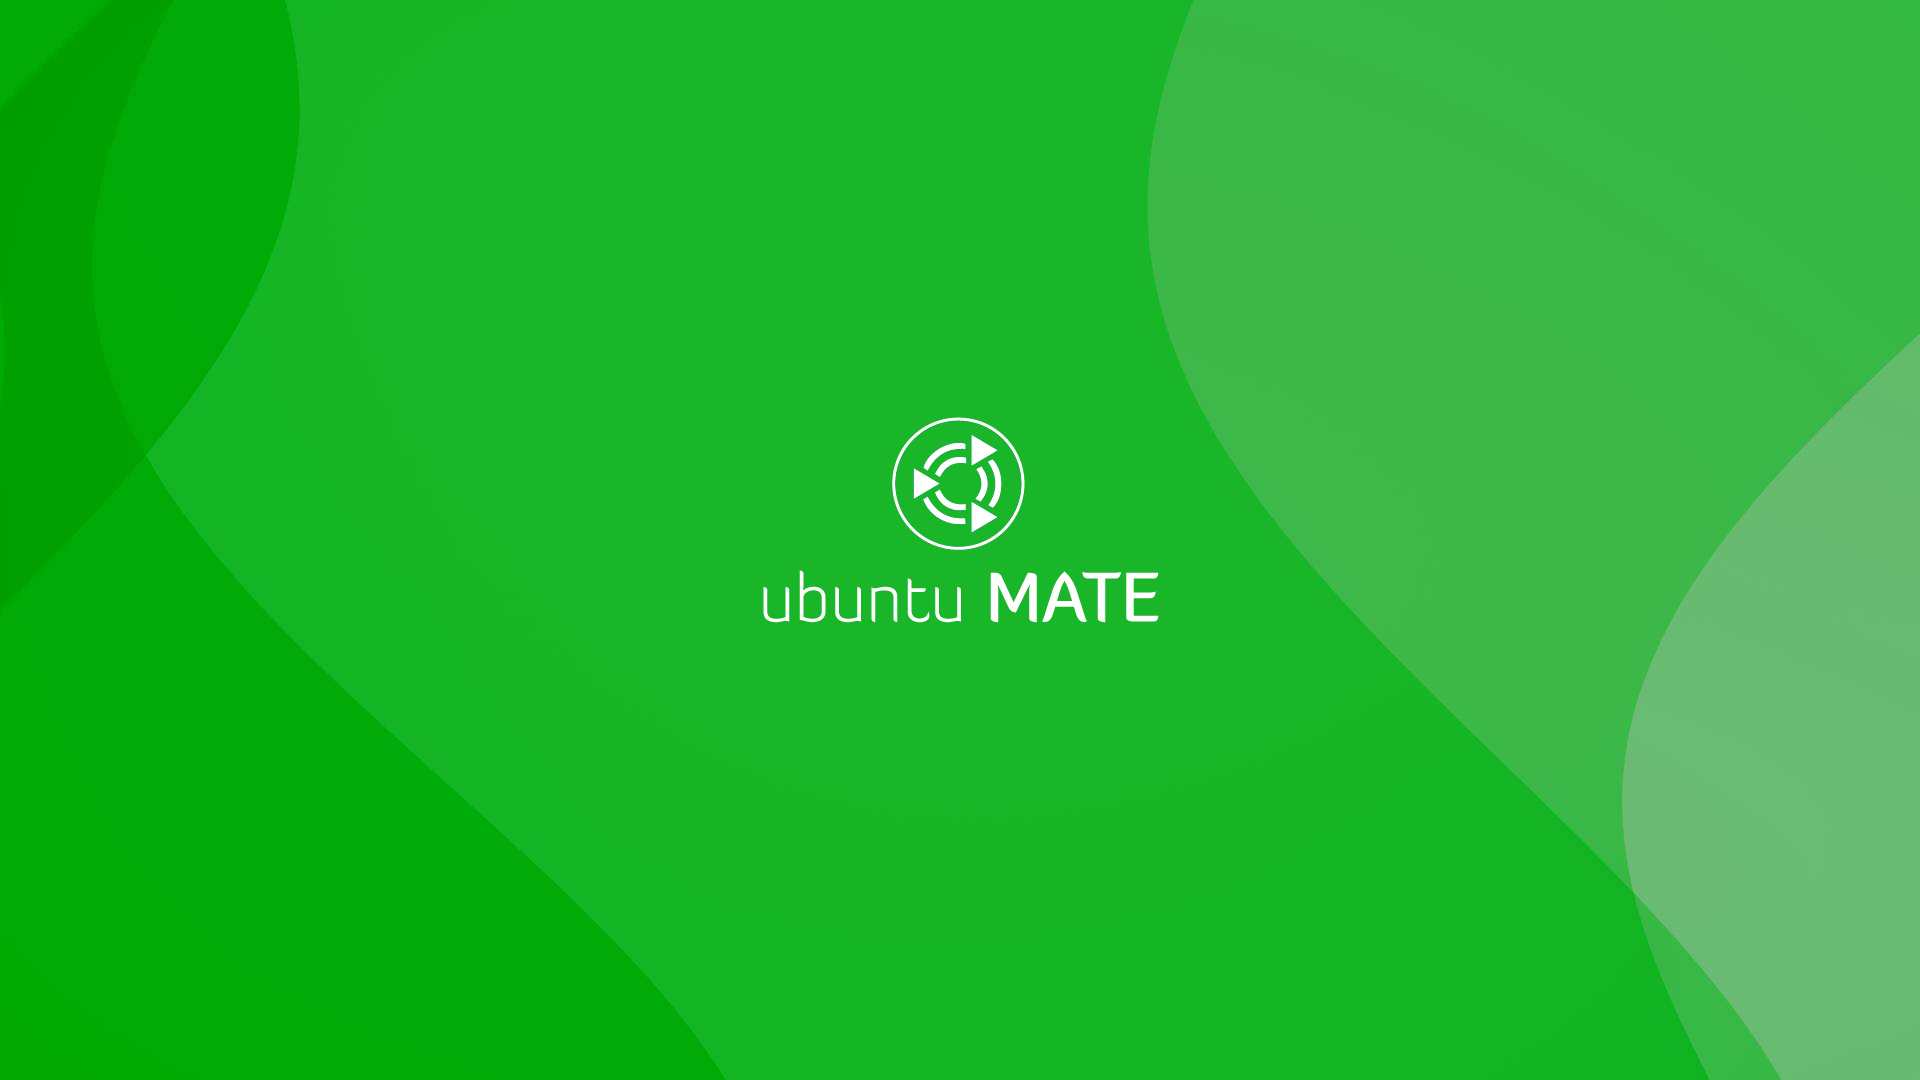 Desktop Wallpapers Ubuntu Mate Artwork Ubuntu Mate Community